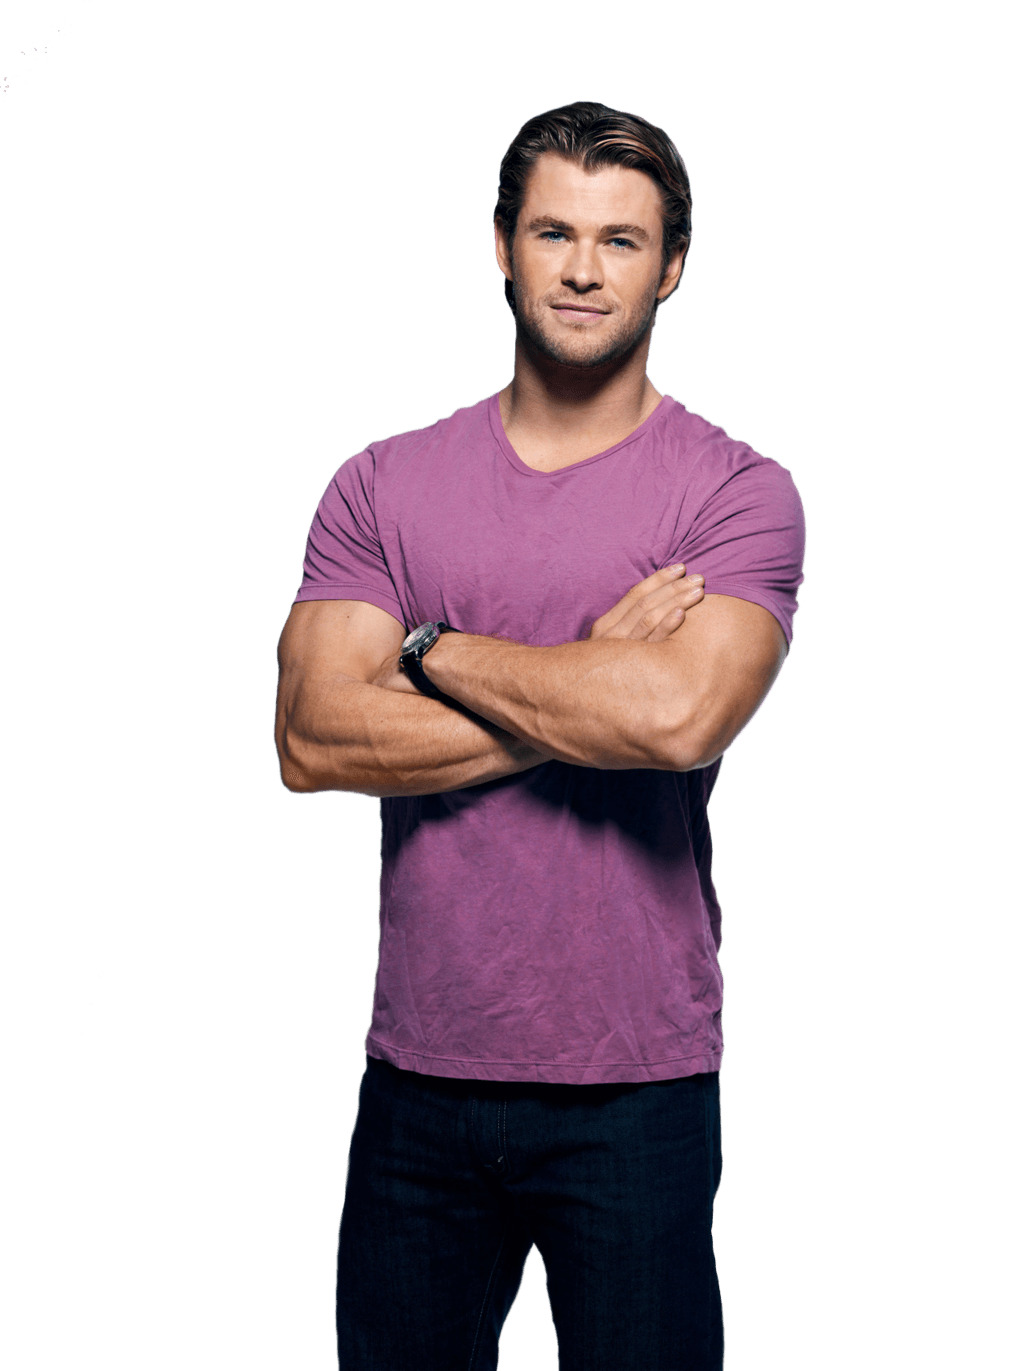 Chris Hemsworth Purple Tshirt png icons